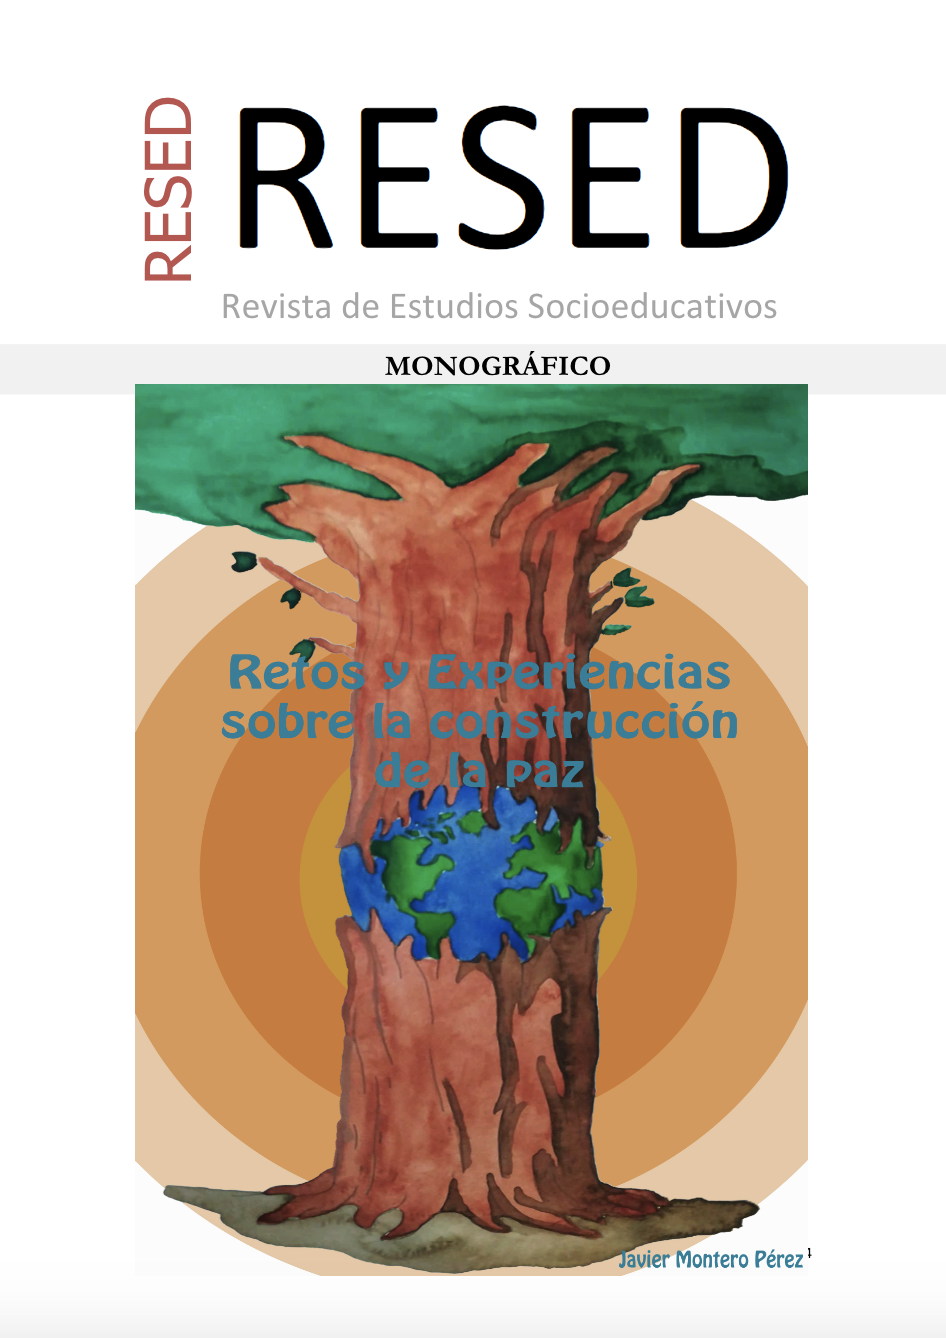 Revista de Estudios Socioeducativos. ReSed